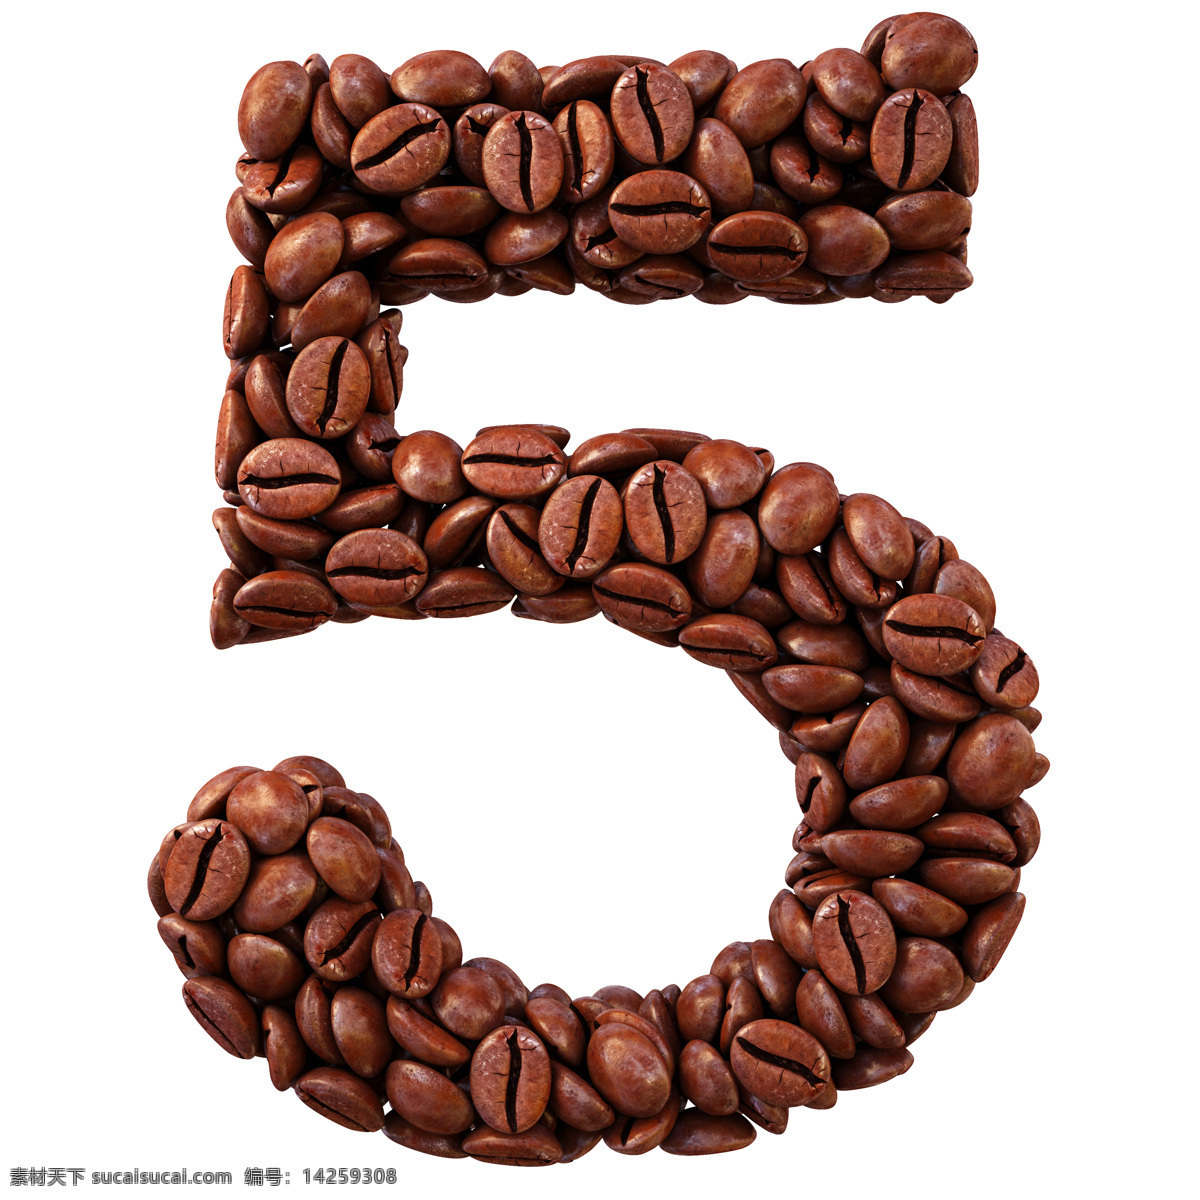 咖啡数字5 咖啡豆数字5 咖啡字母 咖啡数字 咖啡字体 咖啡艺术字 书画文字 文化艺术 白色